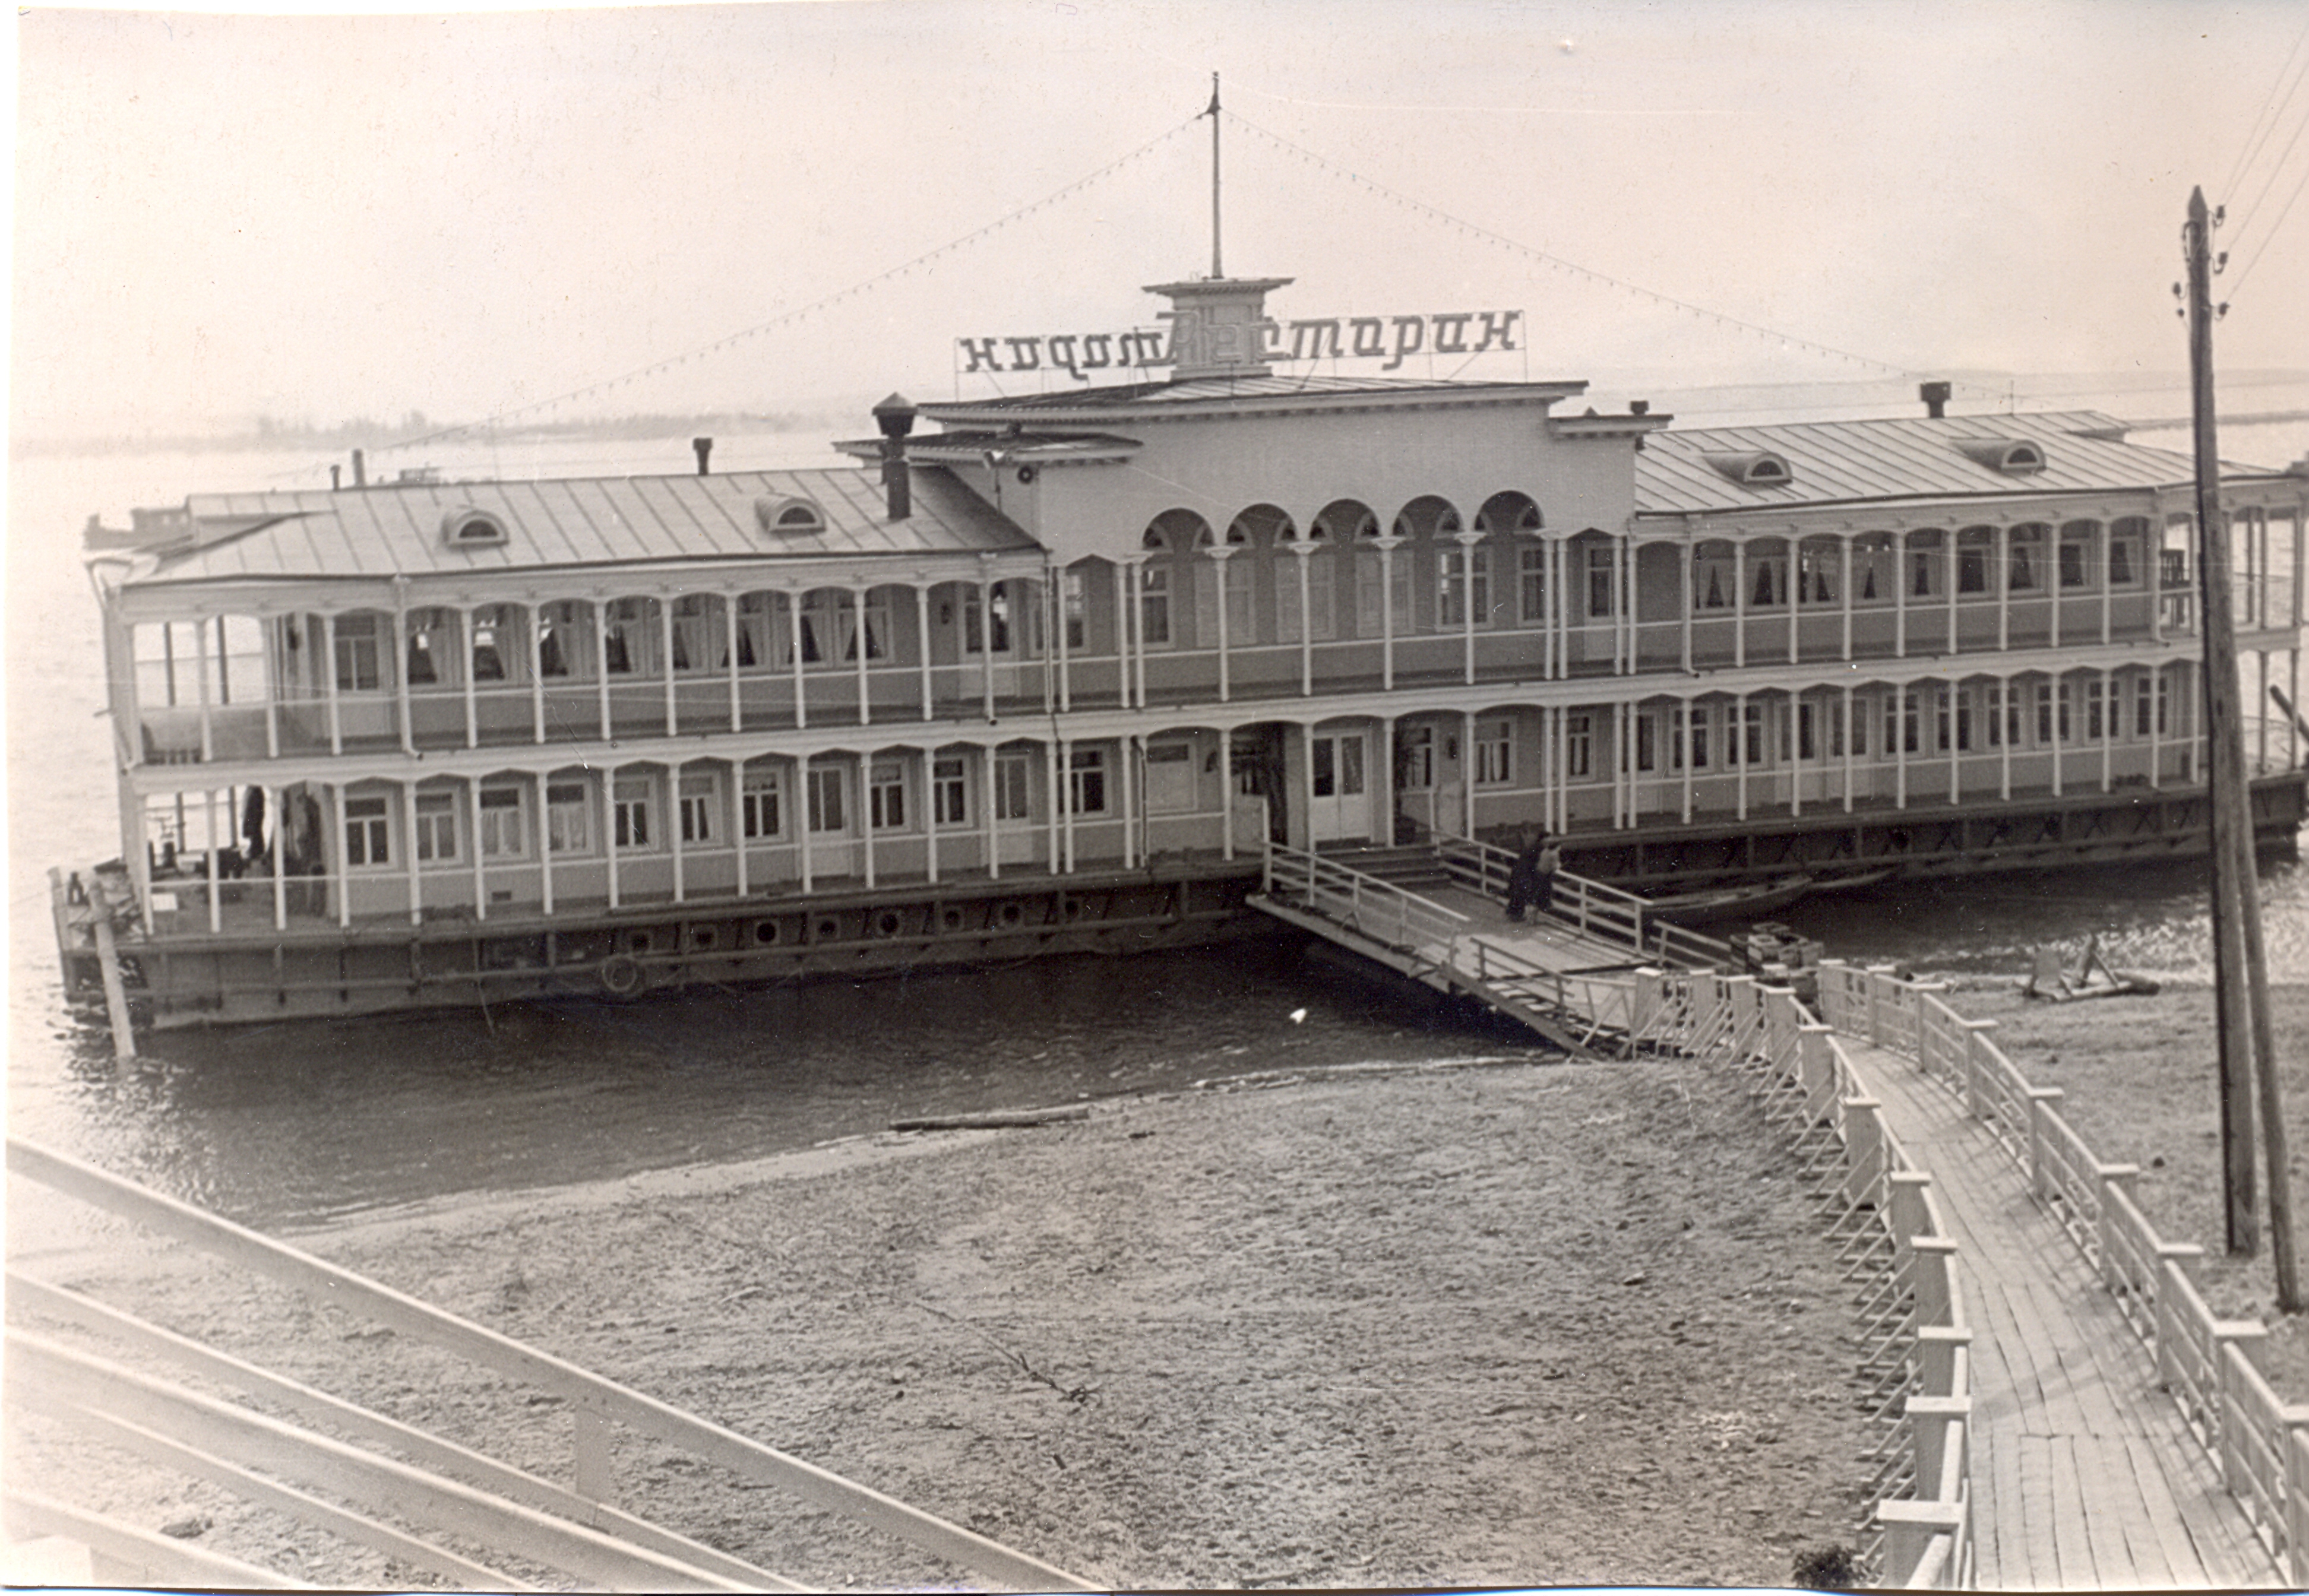 фото речного вокзала в москве старые